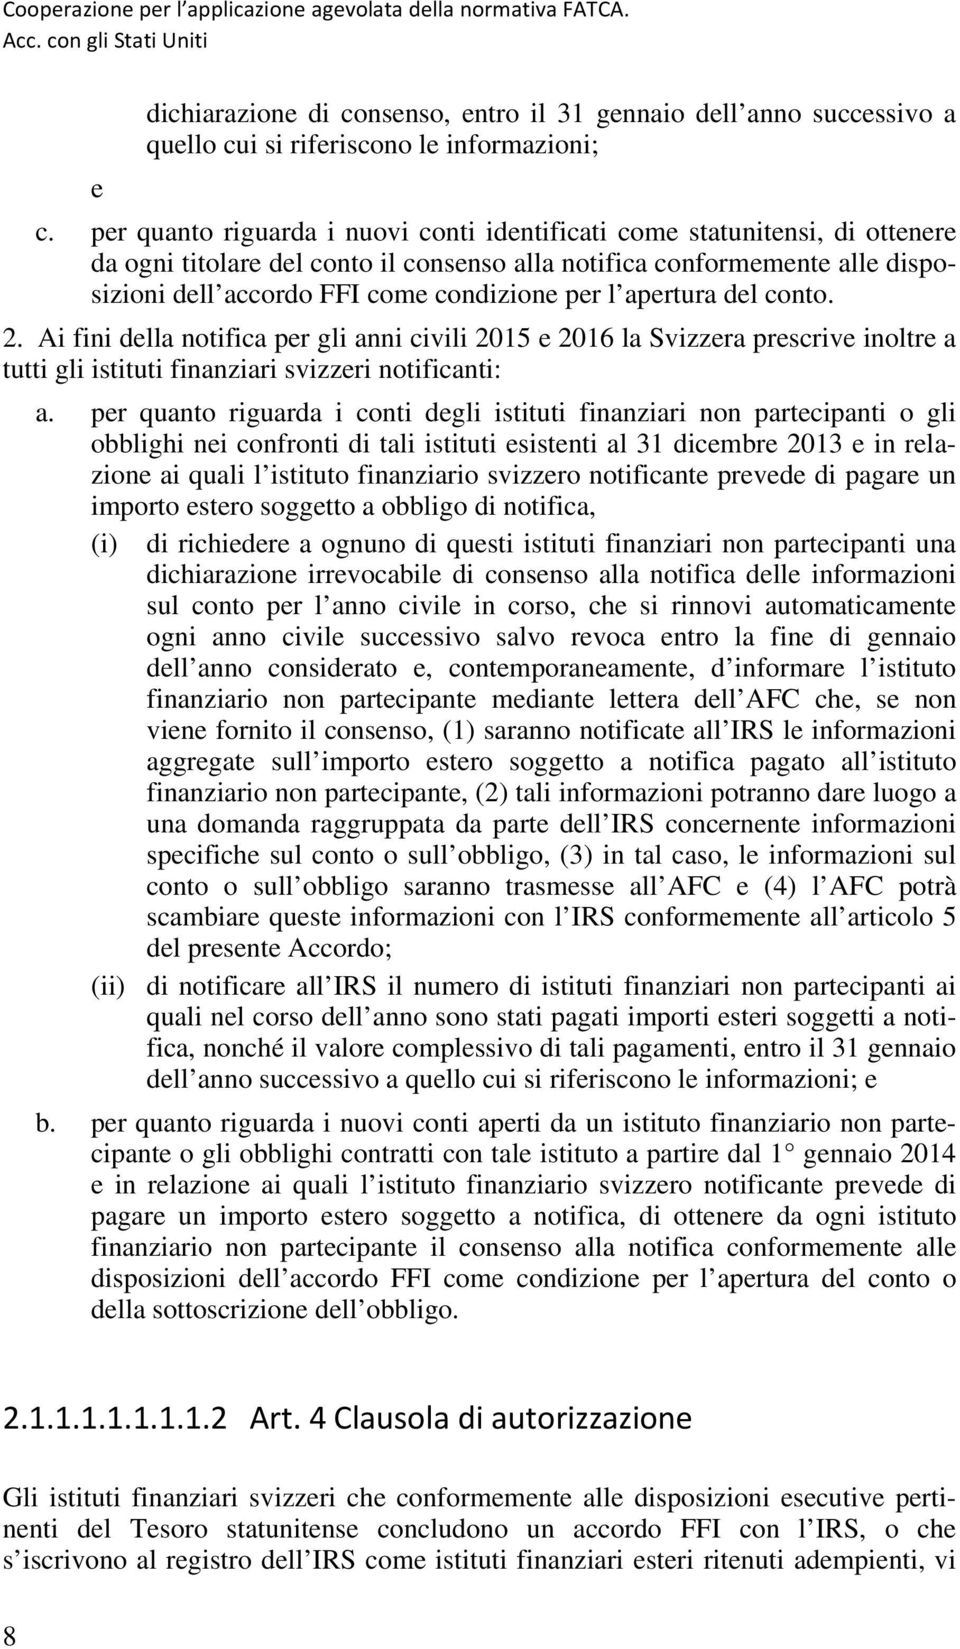 l apertura del conto. 2. Ai fini della notifica per gli anni civili 2015 e 2016 la Svizzera prescrive inoltre a tutti gli istituti finanziari svizzeri notificanti: a.